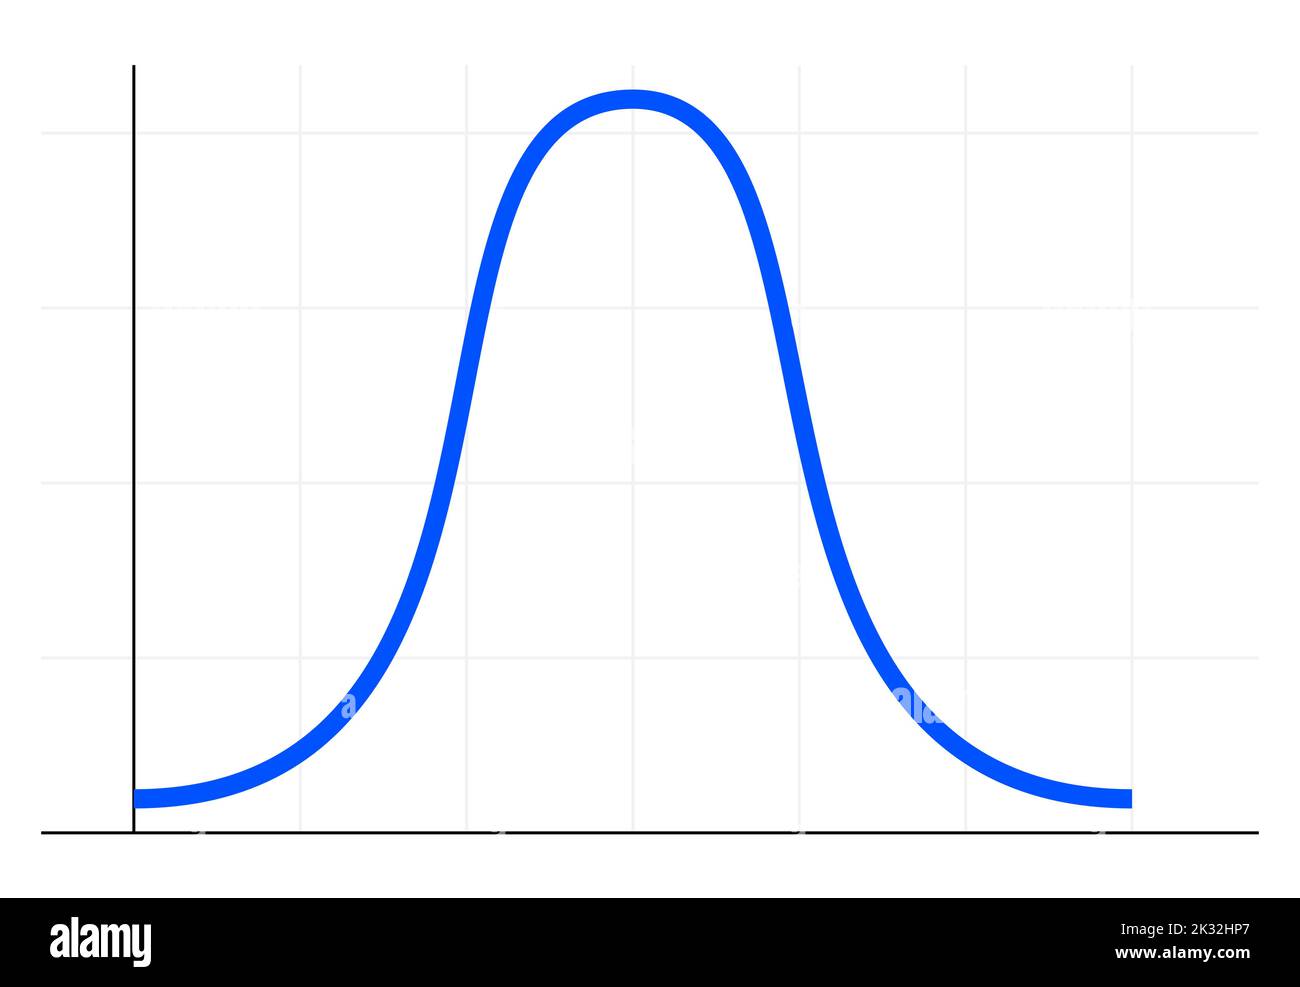 Кривая колокола. Кривая знаков. Bell curve. График распределения с отклонением вправо. Кривая популярности.